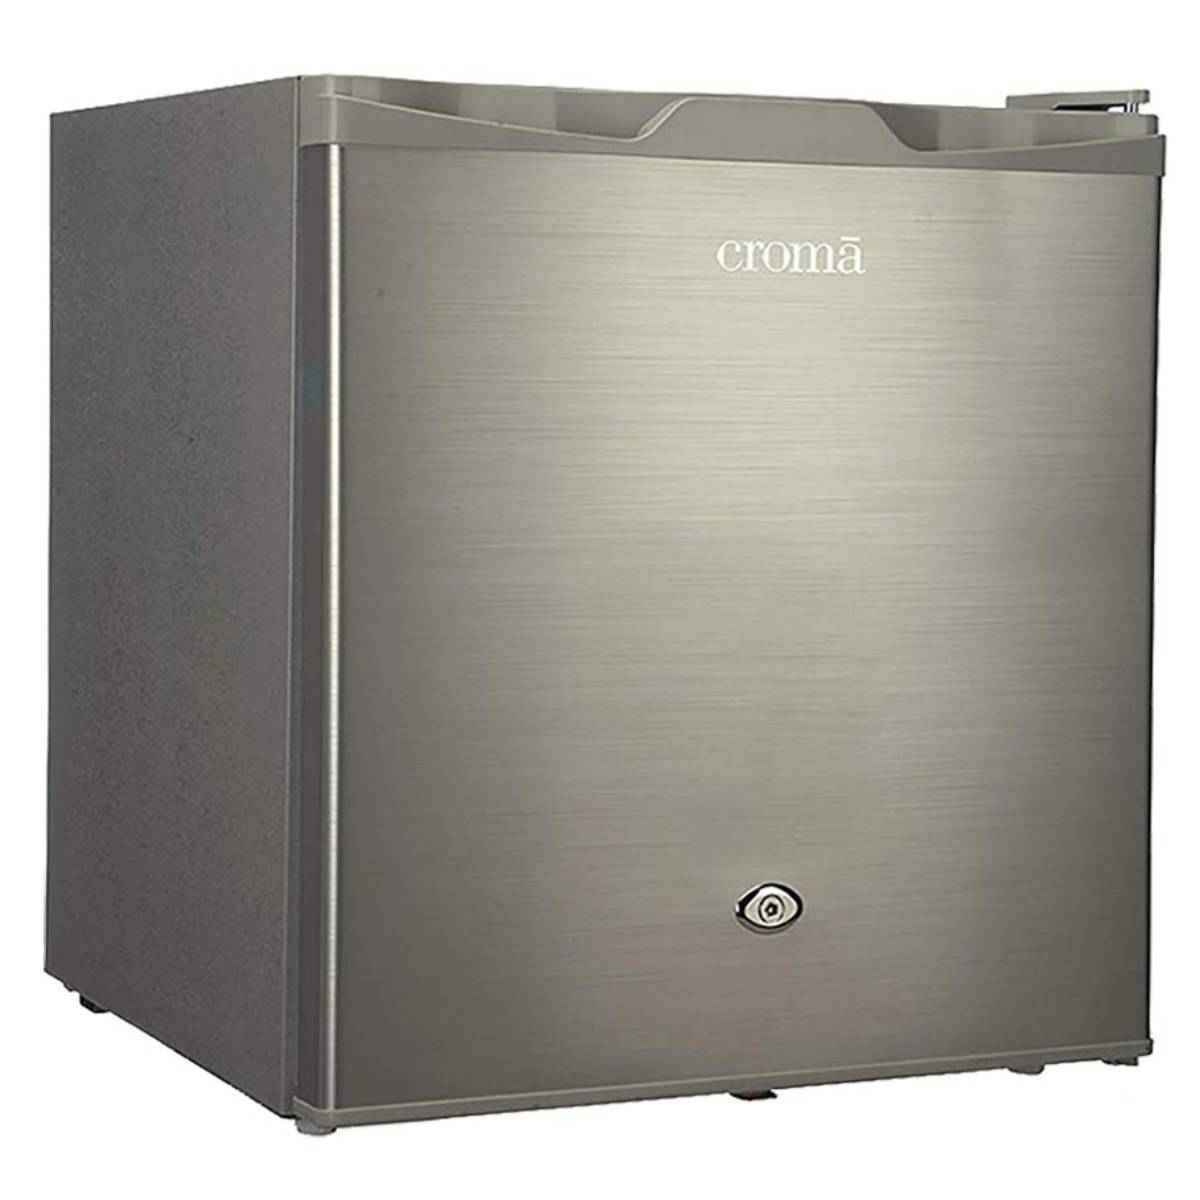 க்ரோமா 50 Liters Direct Cool Single Door Mini Refrigerator 